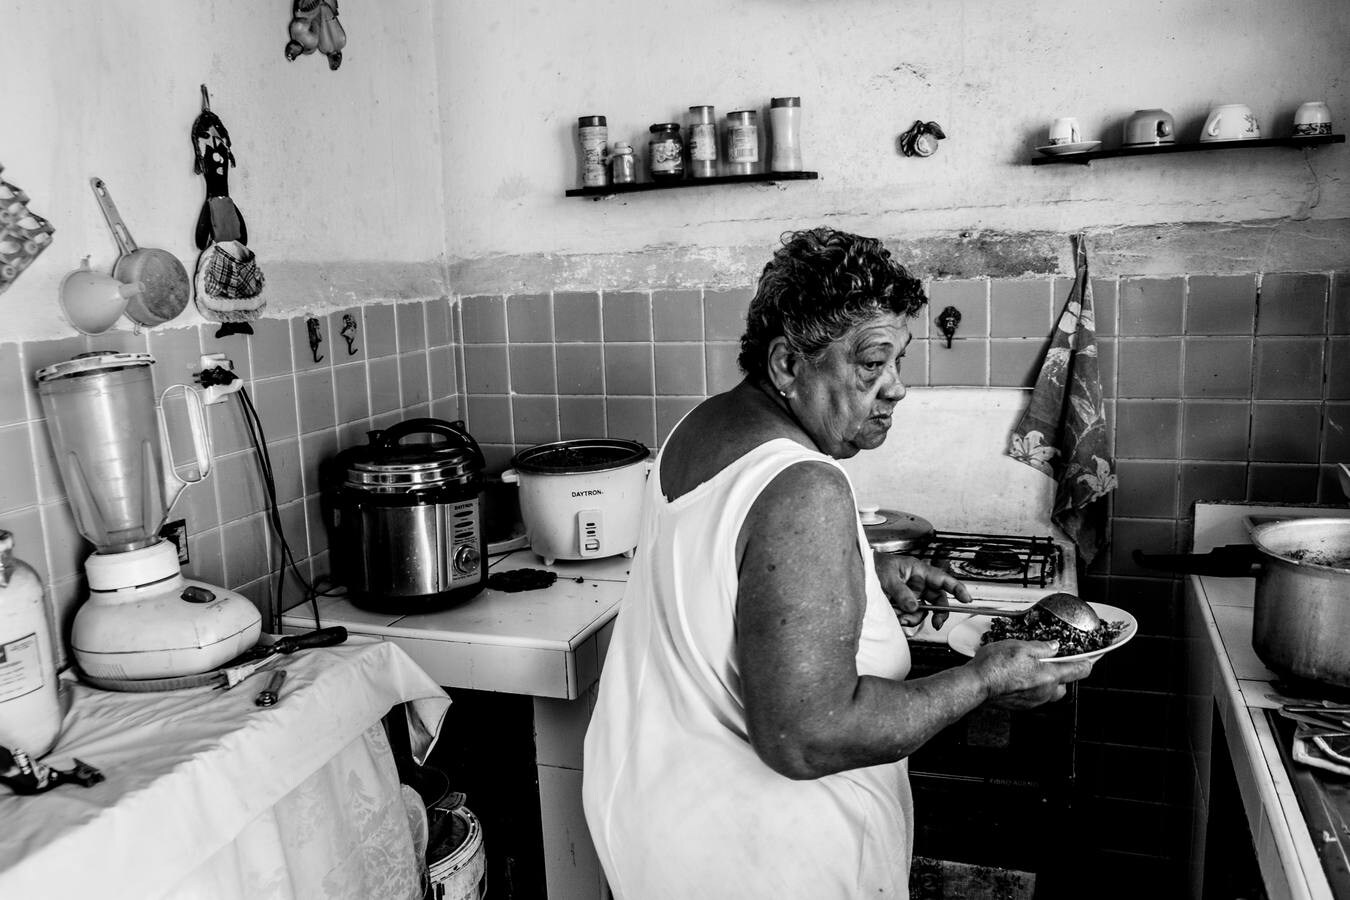 Roberto Palomo, un fotoperiodista pacense de 28 años, recorre el mundo en busca de reportajes e historias gráficas. El pasado lunes dio una charla en el Meiac sobre imágenes de Cuba y México.